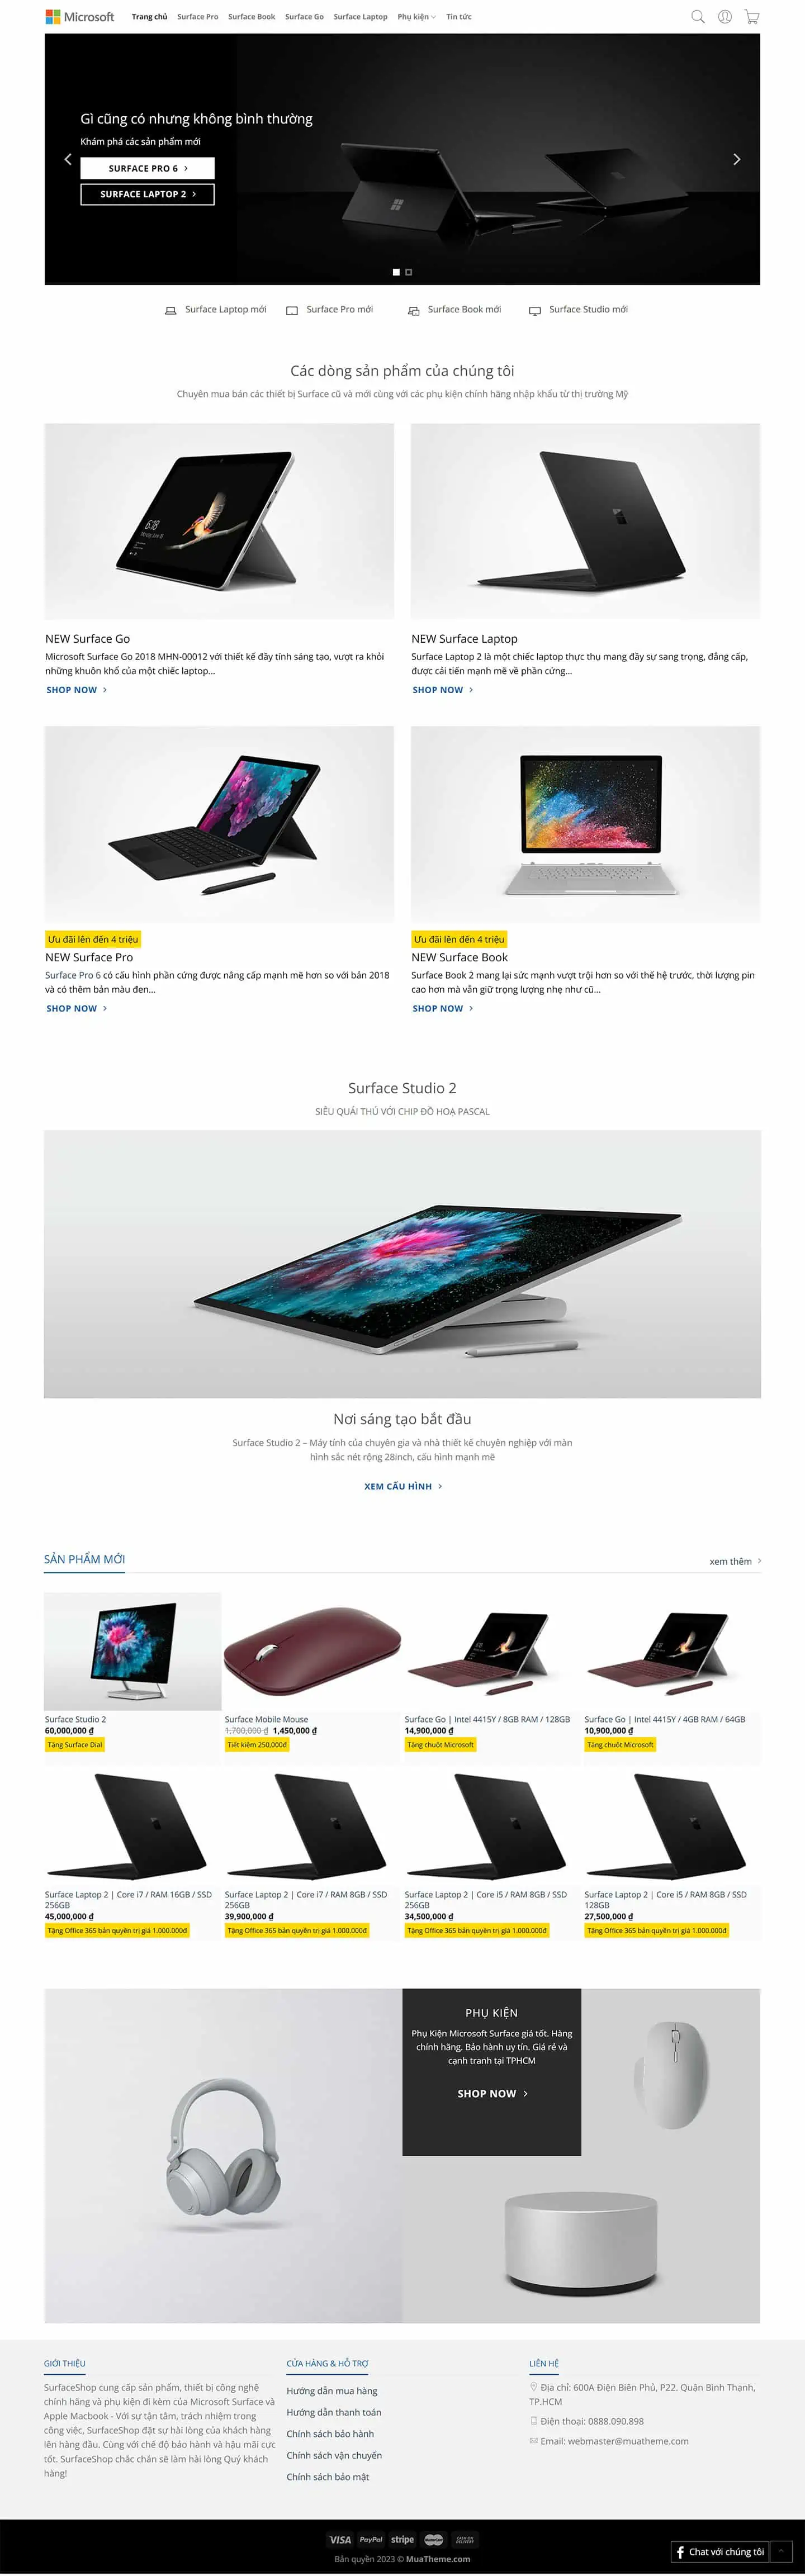 Theme bán laptop và phụ kiện giống Surface Store 2